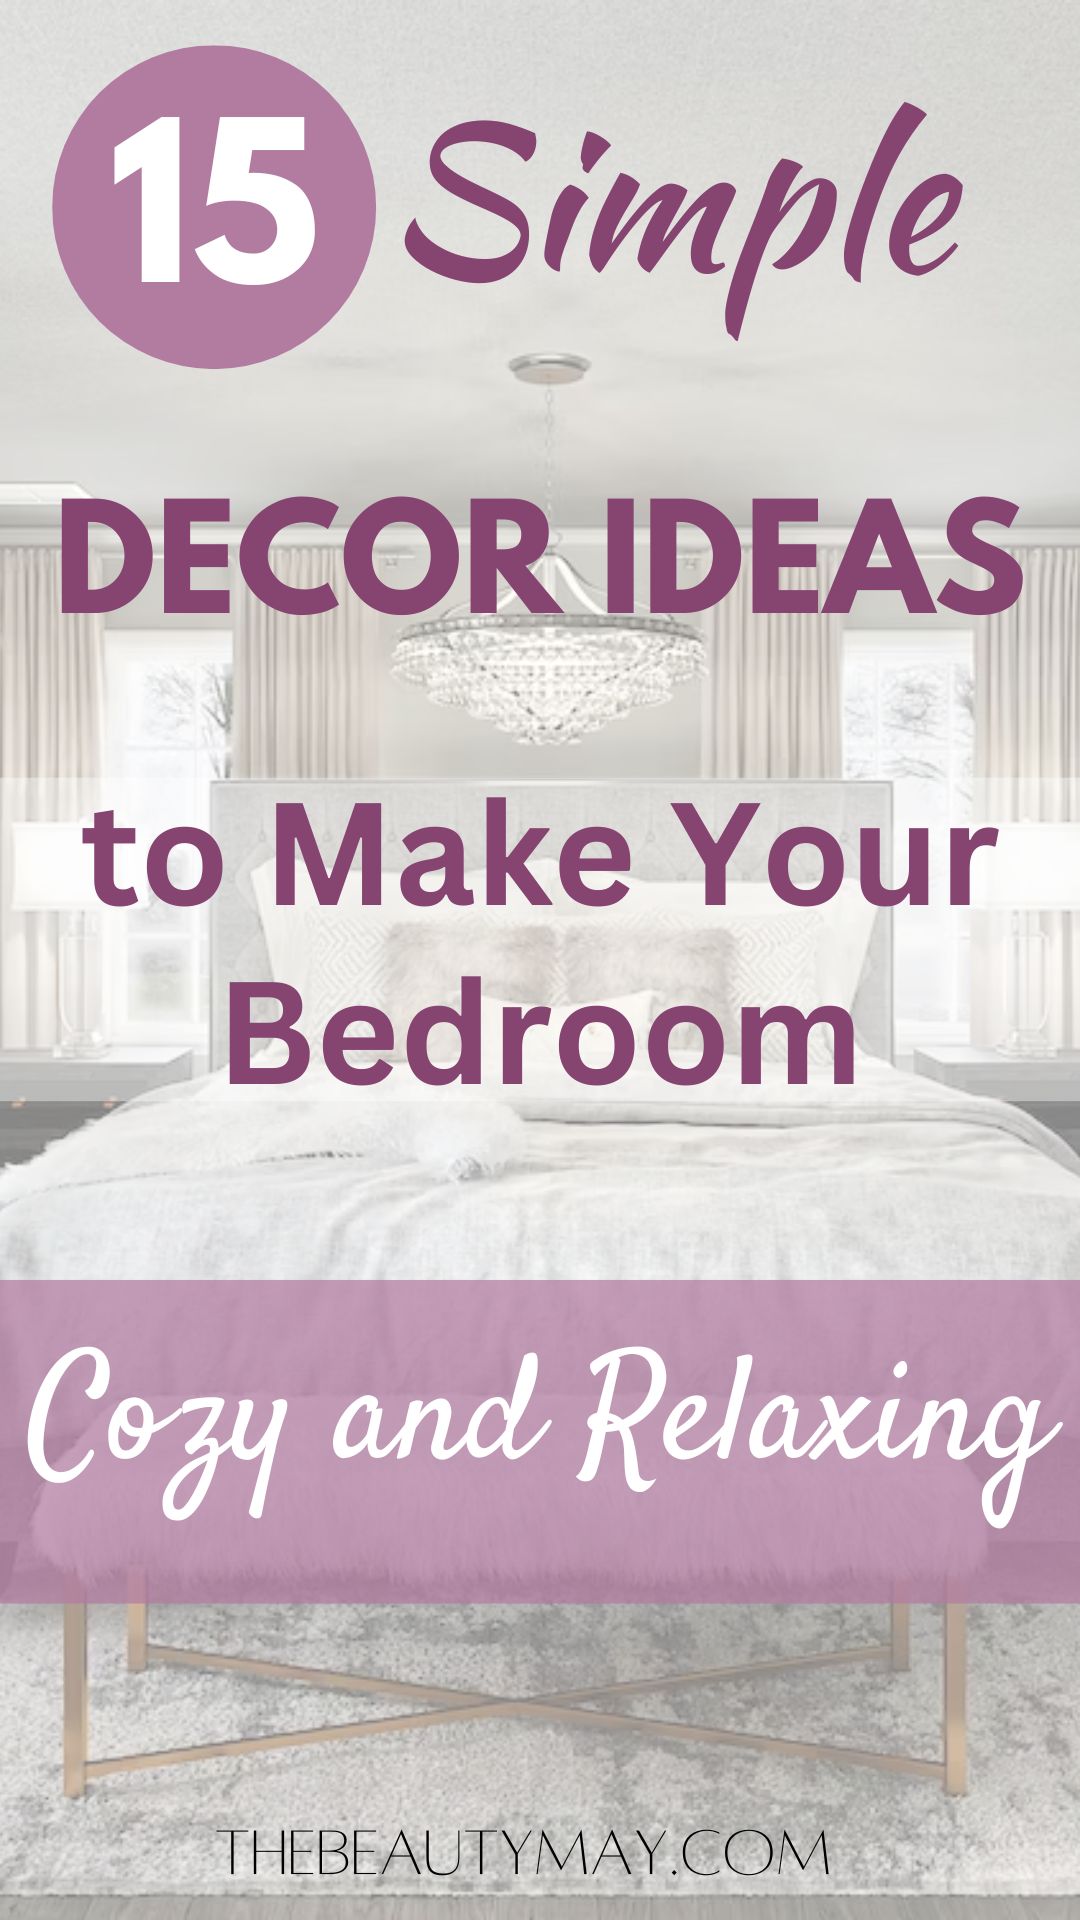 Make Your Bedroom cozy relaxing